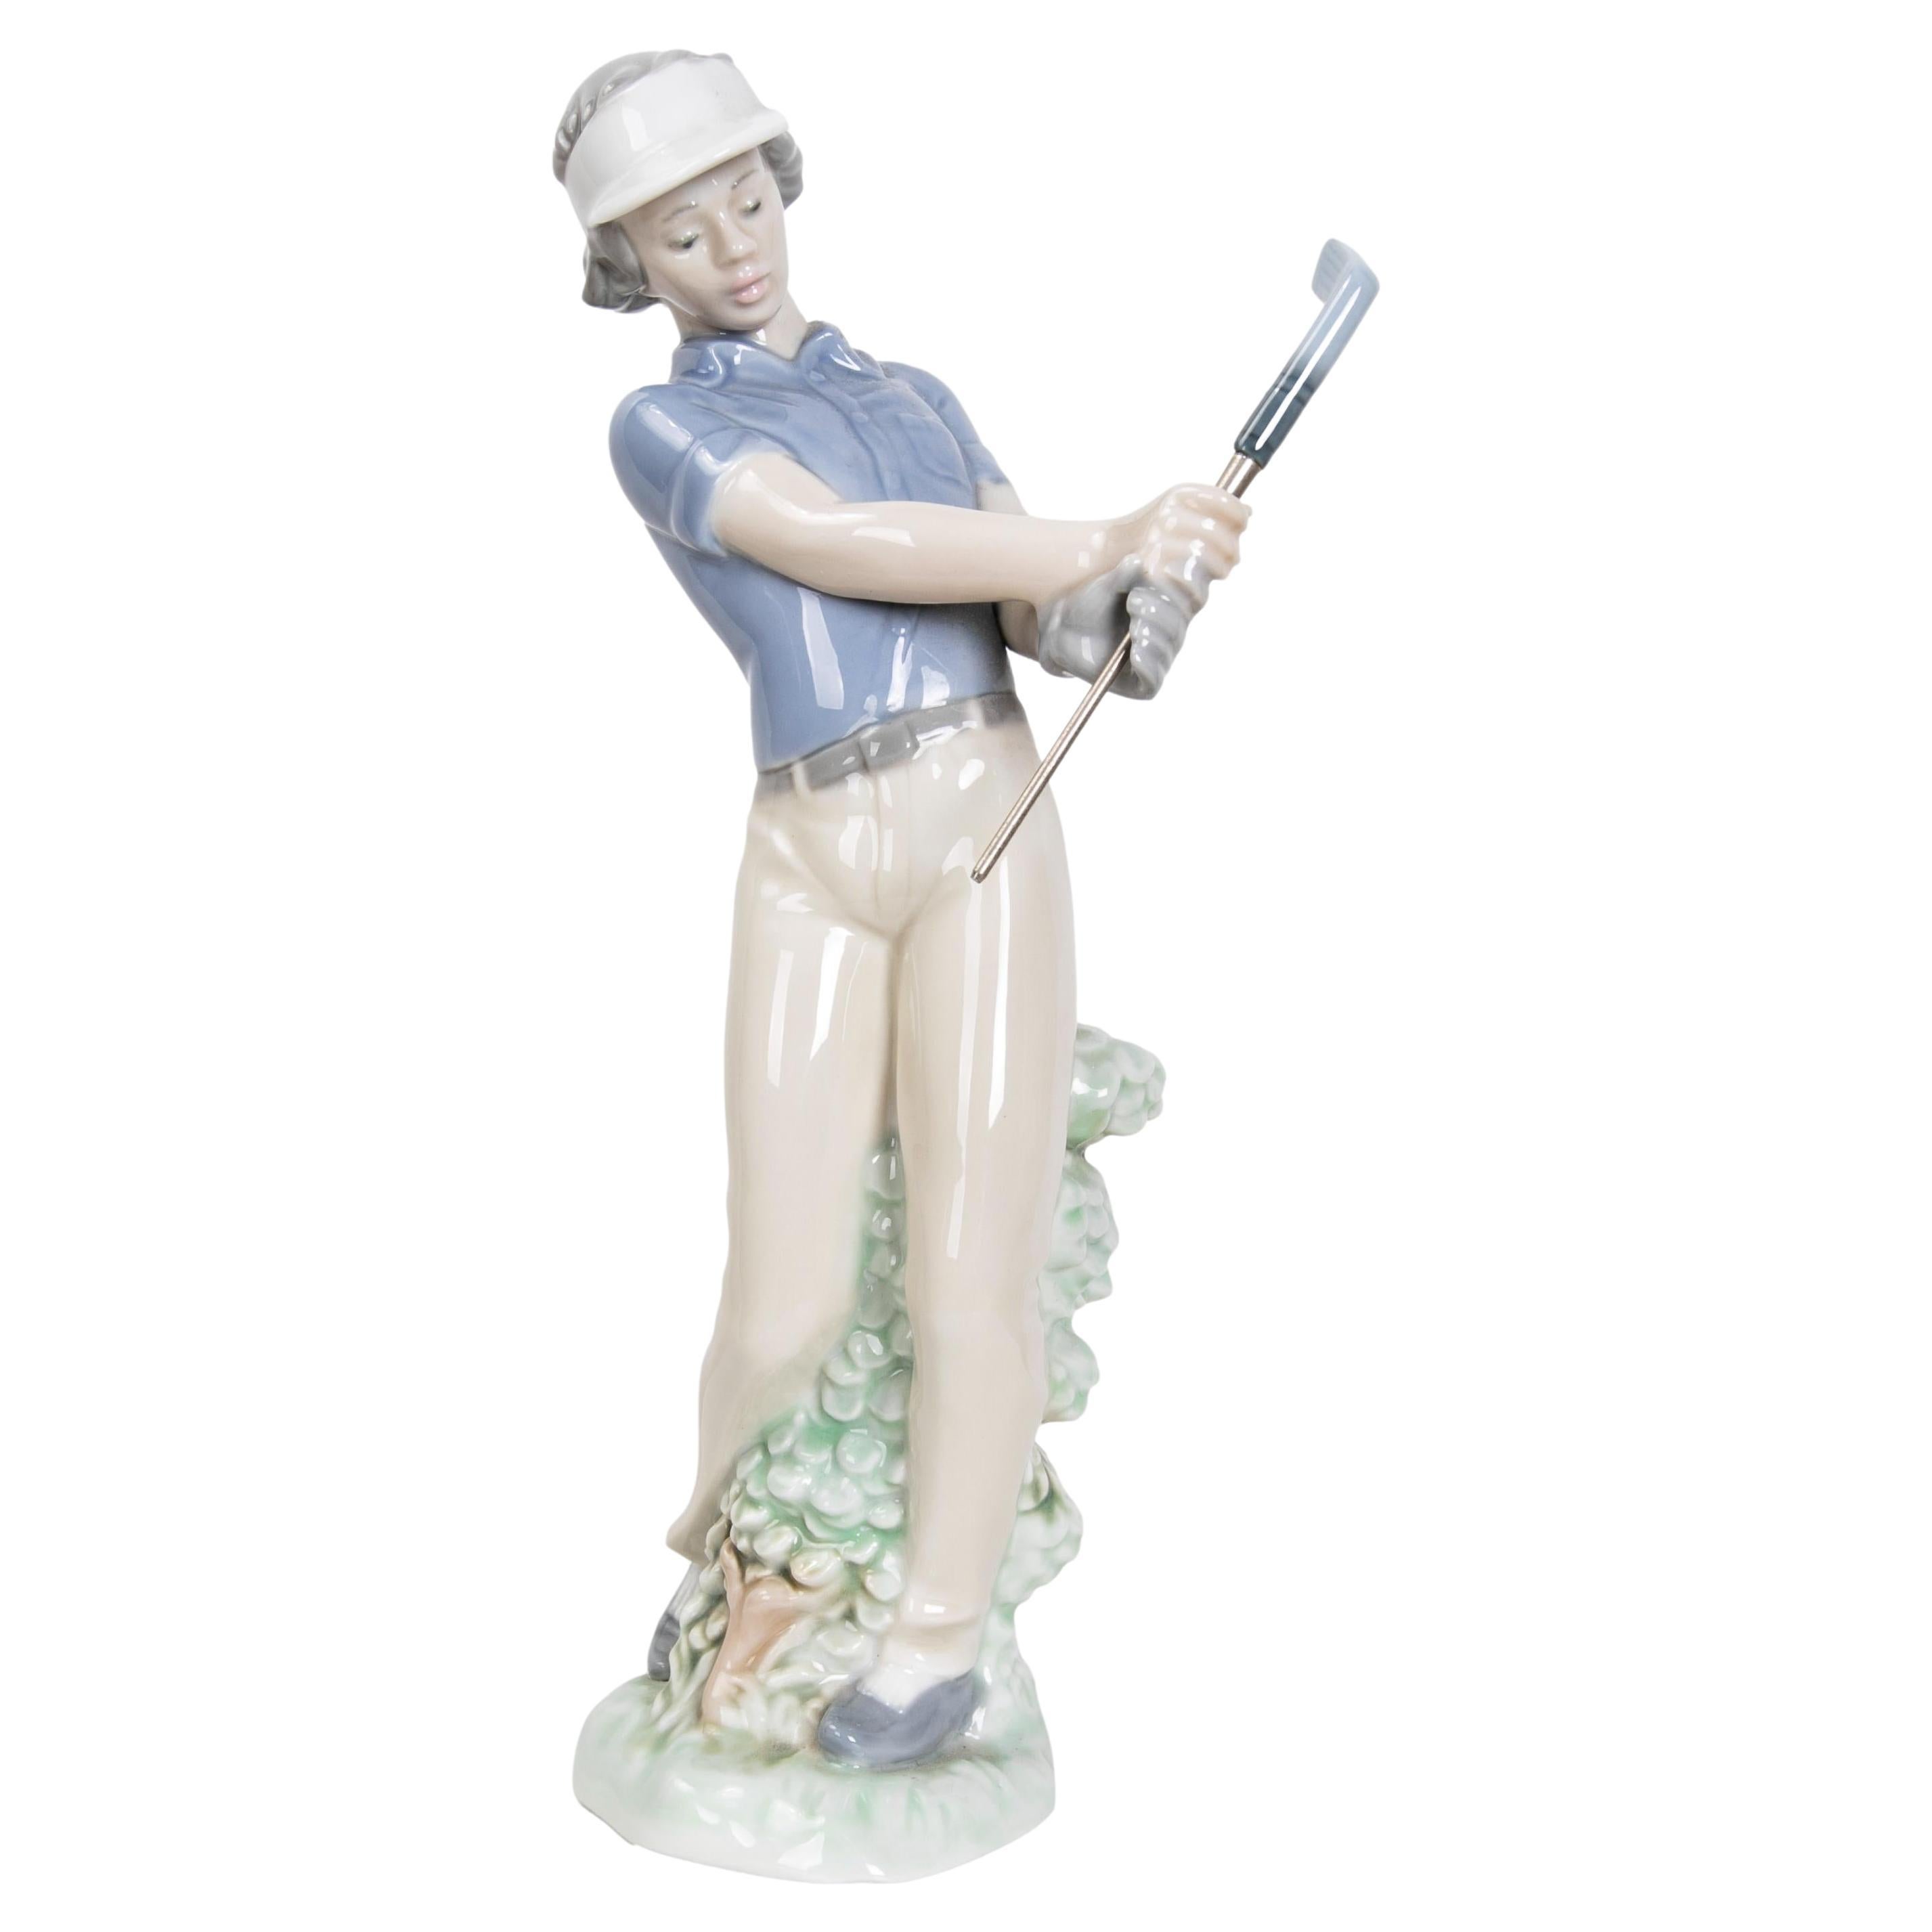 Figura de Porcelana de Jugador de Golf, Firmada 1985, Lladro